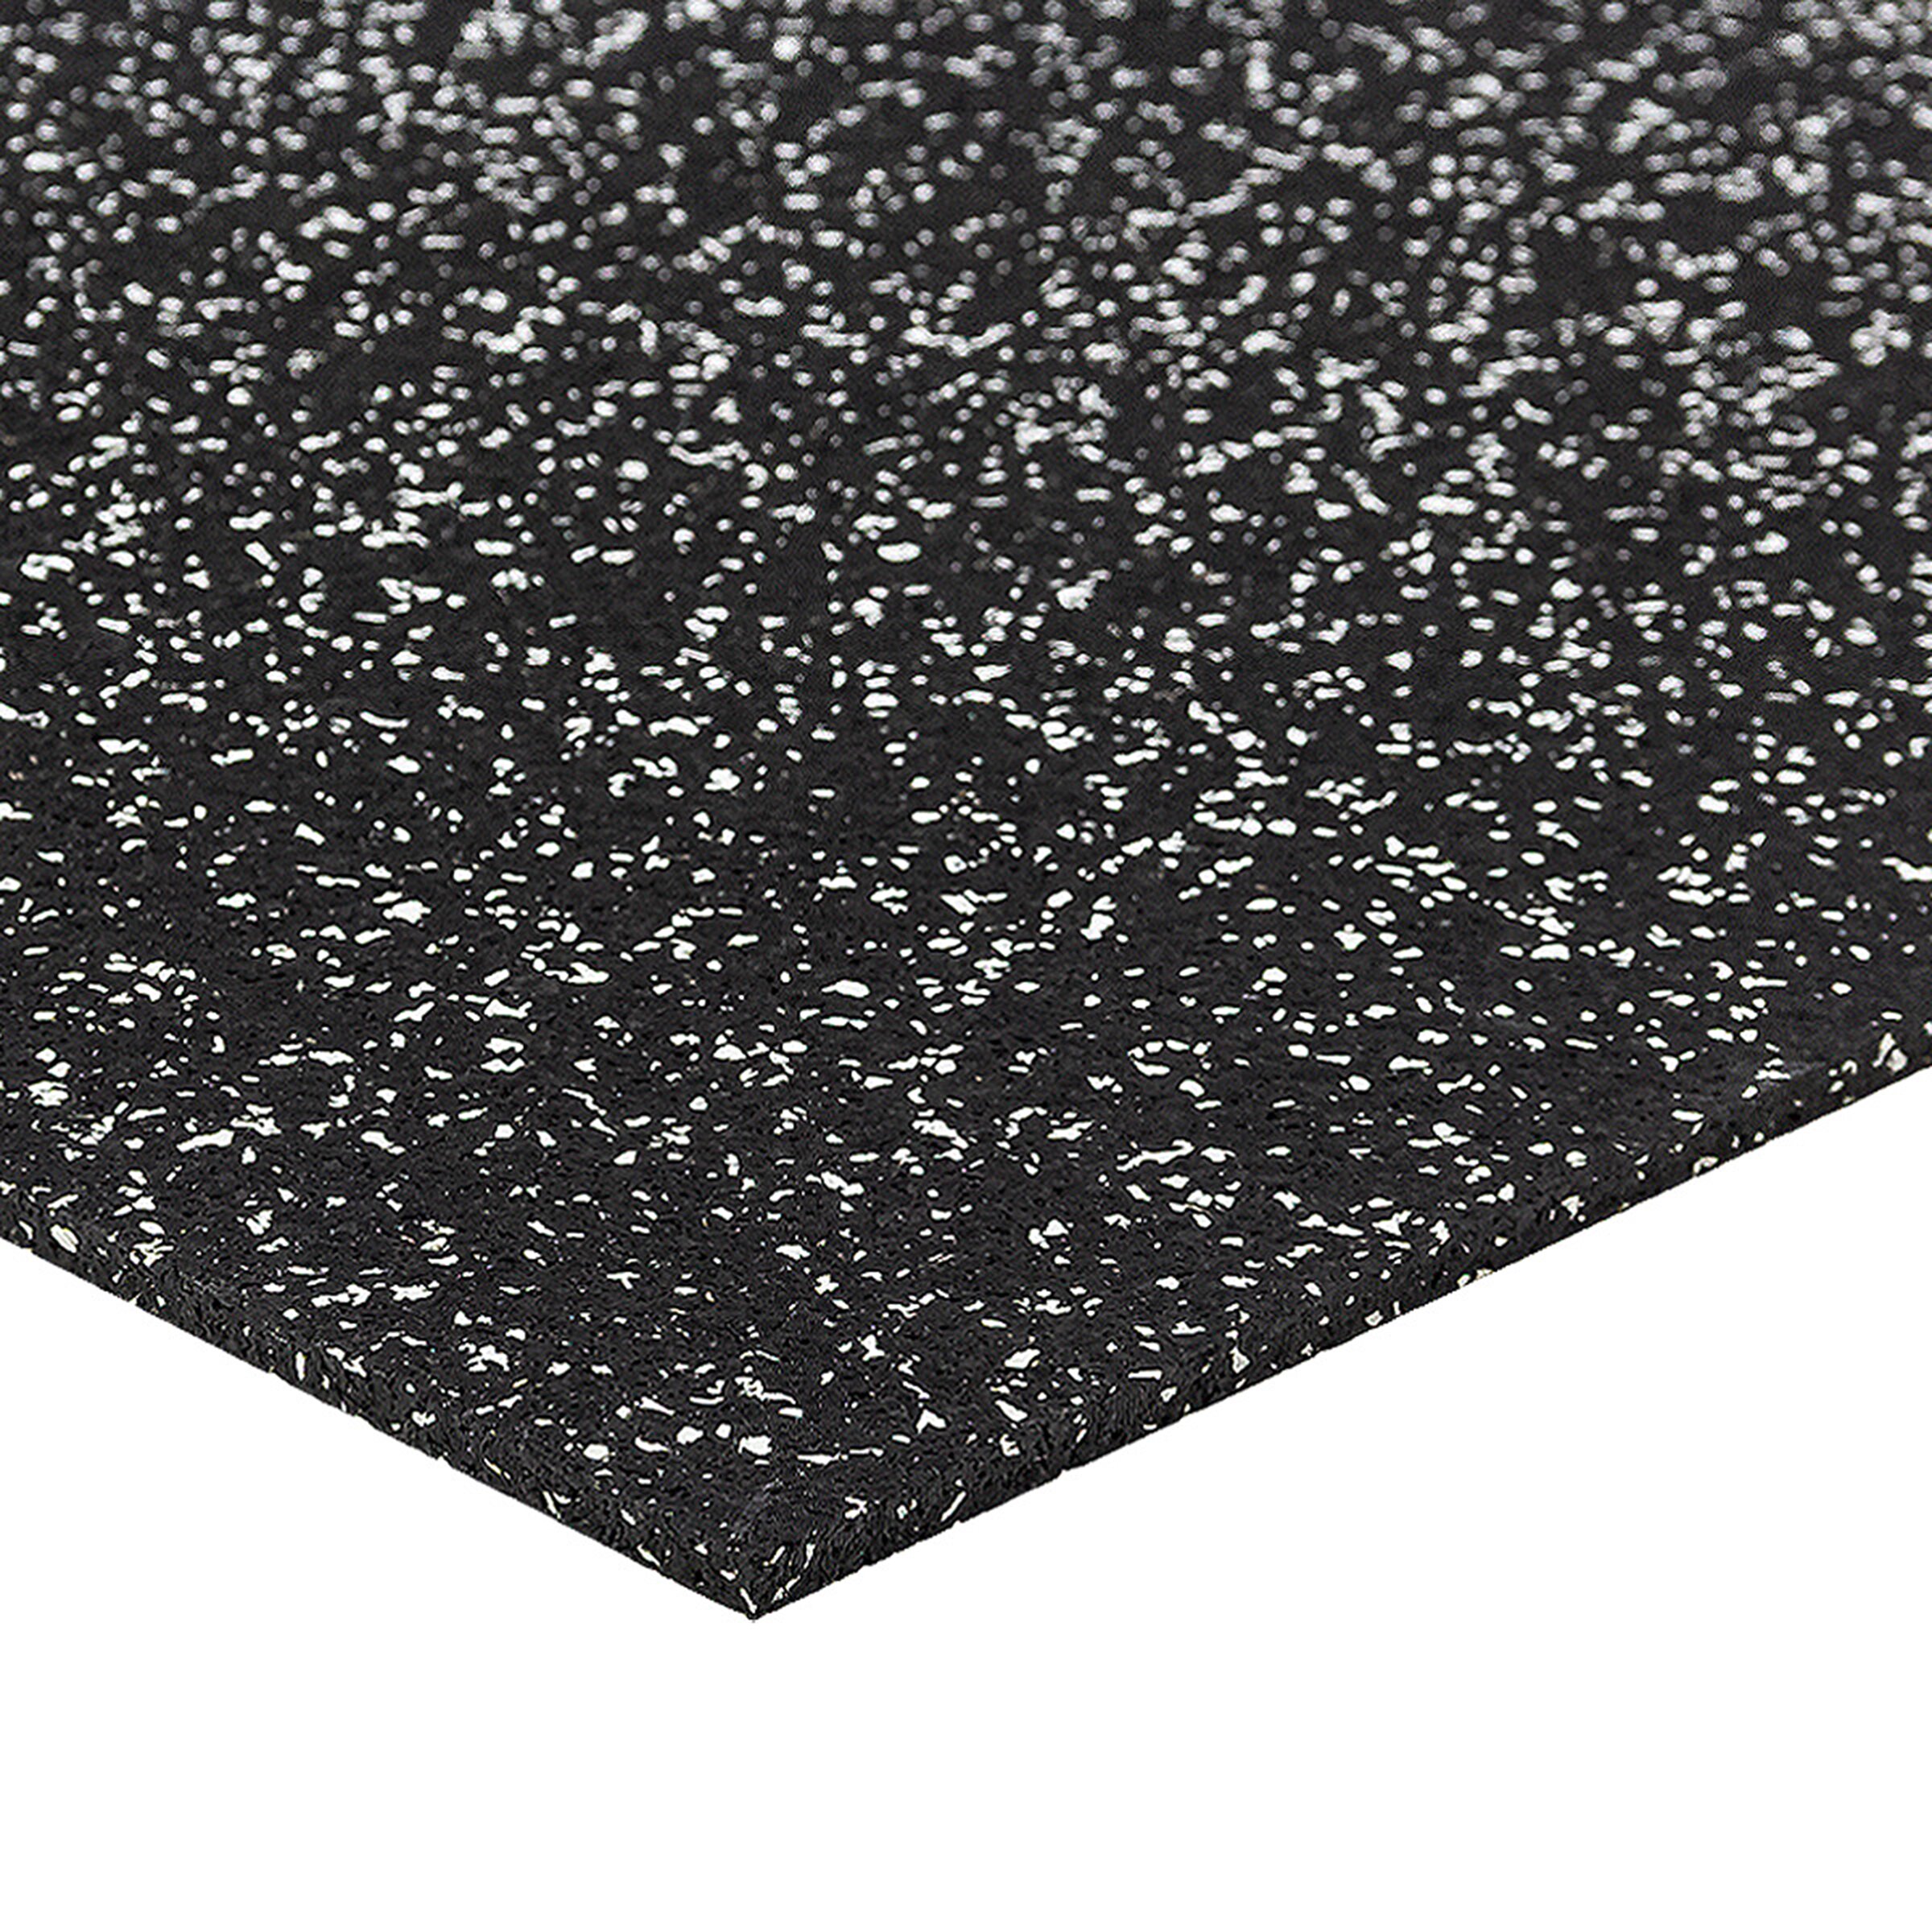 Černo-bílá gumová puzzle modulová dlažba FLOMA SF1050 FitFlo - délka 50 cm, šířka 50 cm, výška 0,8 cm